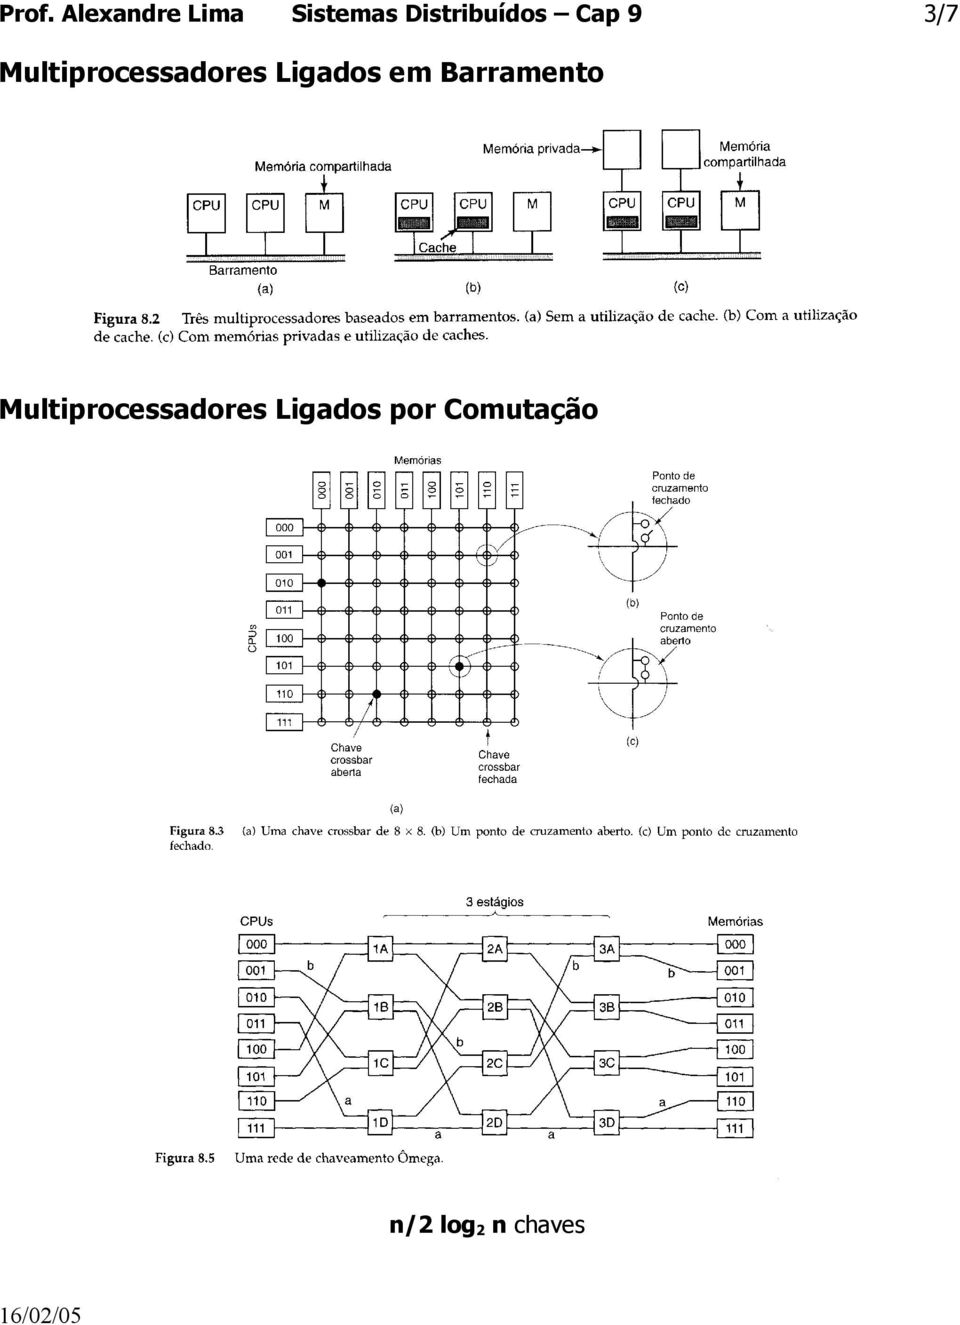 Multiprocessadores Ligados em